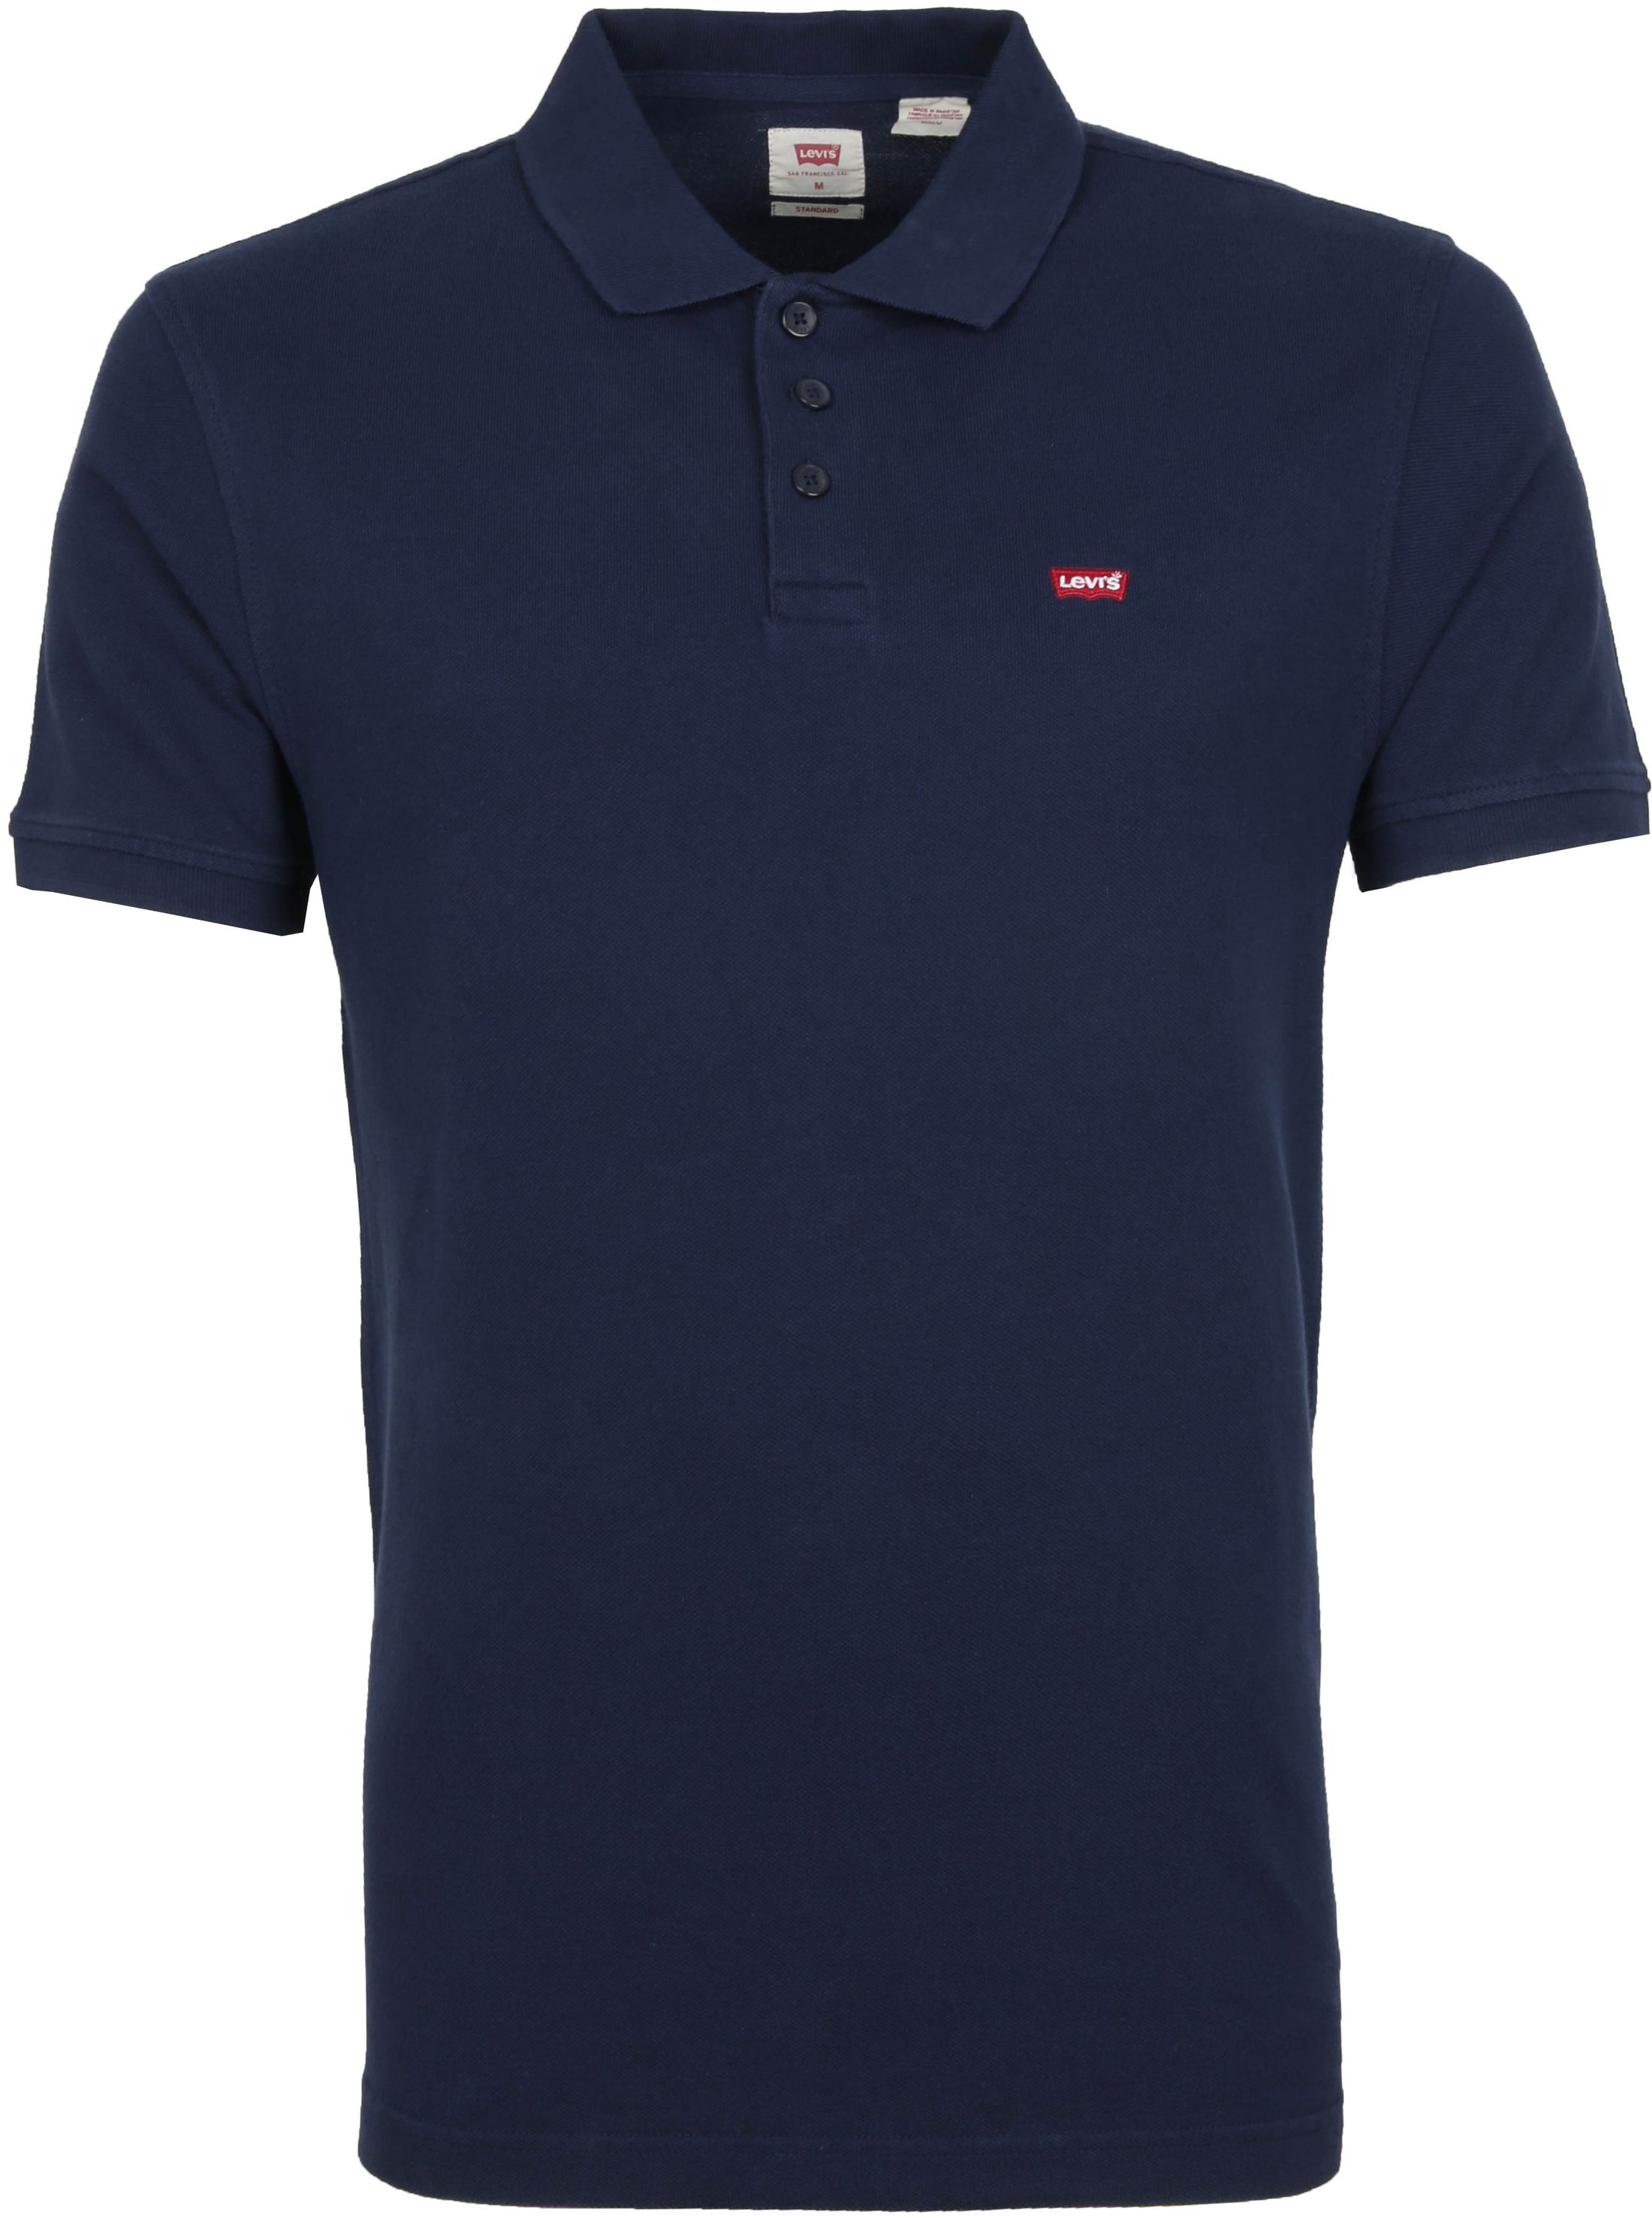 Levis - Levi's pique polo shirt blue dark blue size s